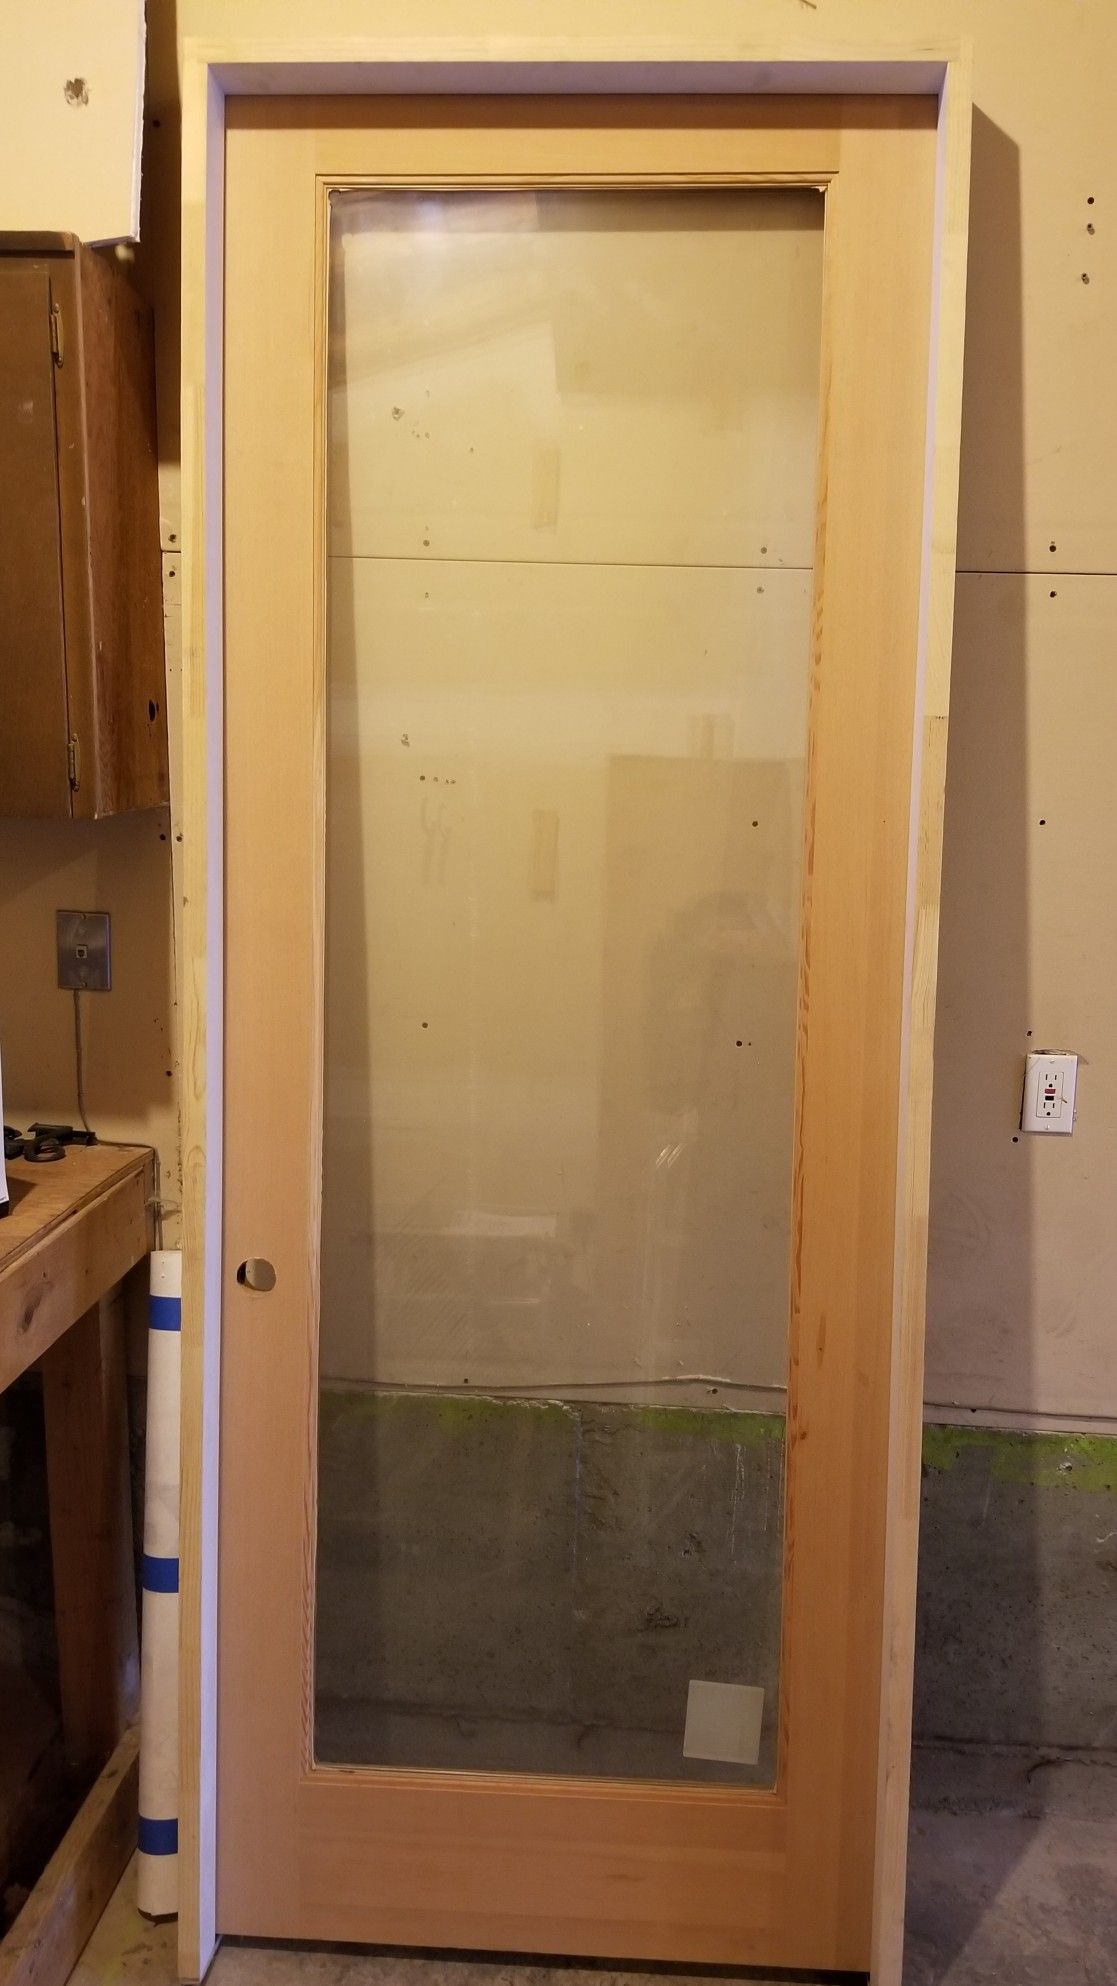 8' × 3' Clear Fir Door. 1 3/4" thick. 4 13/16" jamb. Insulated Glass